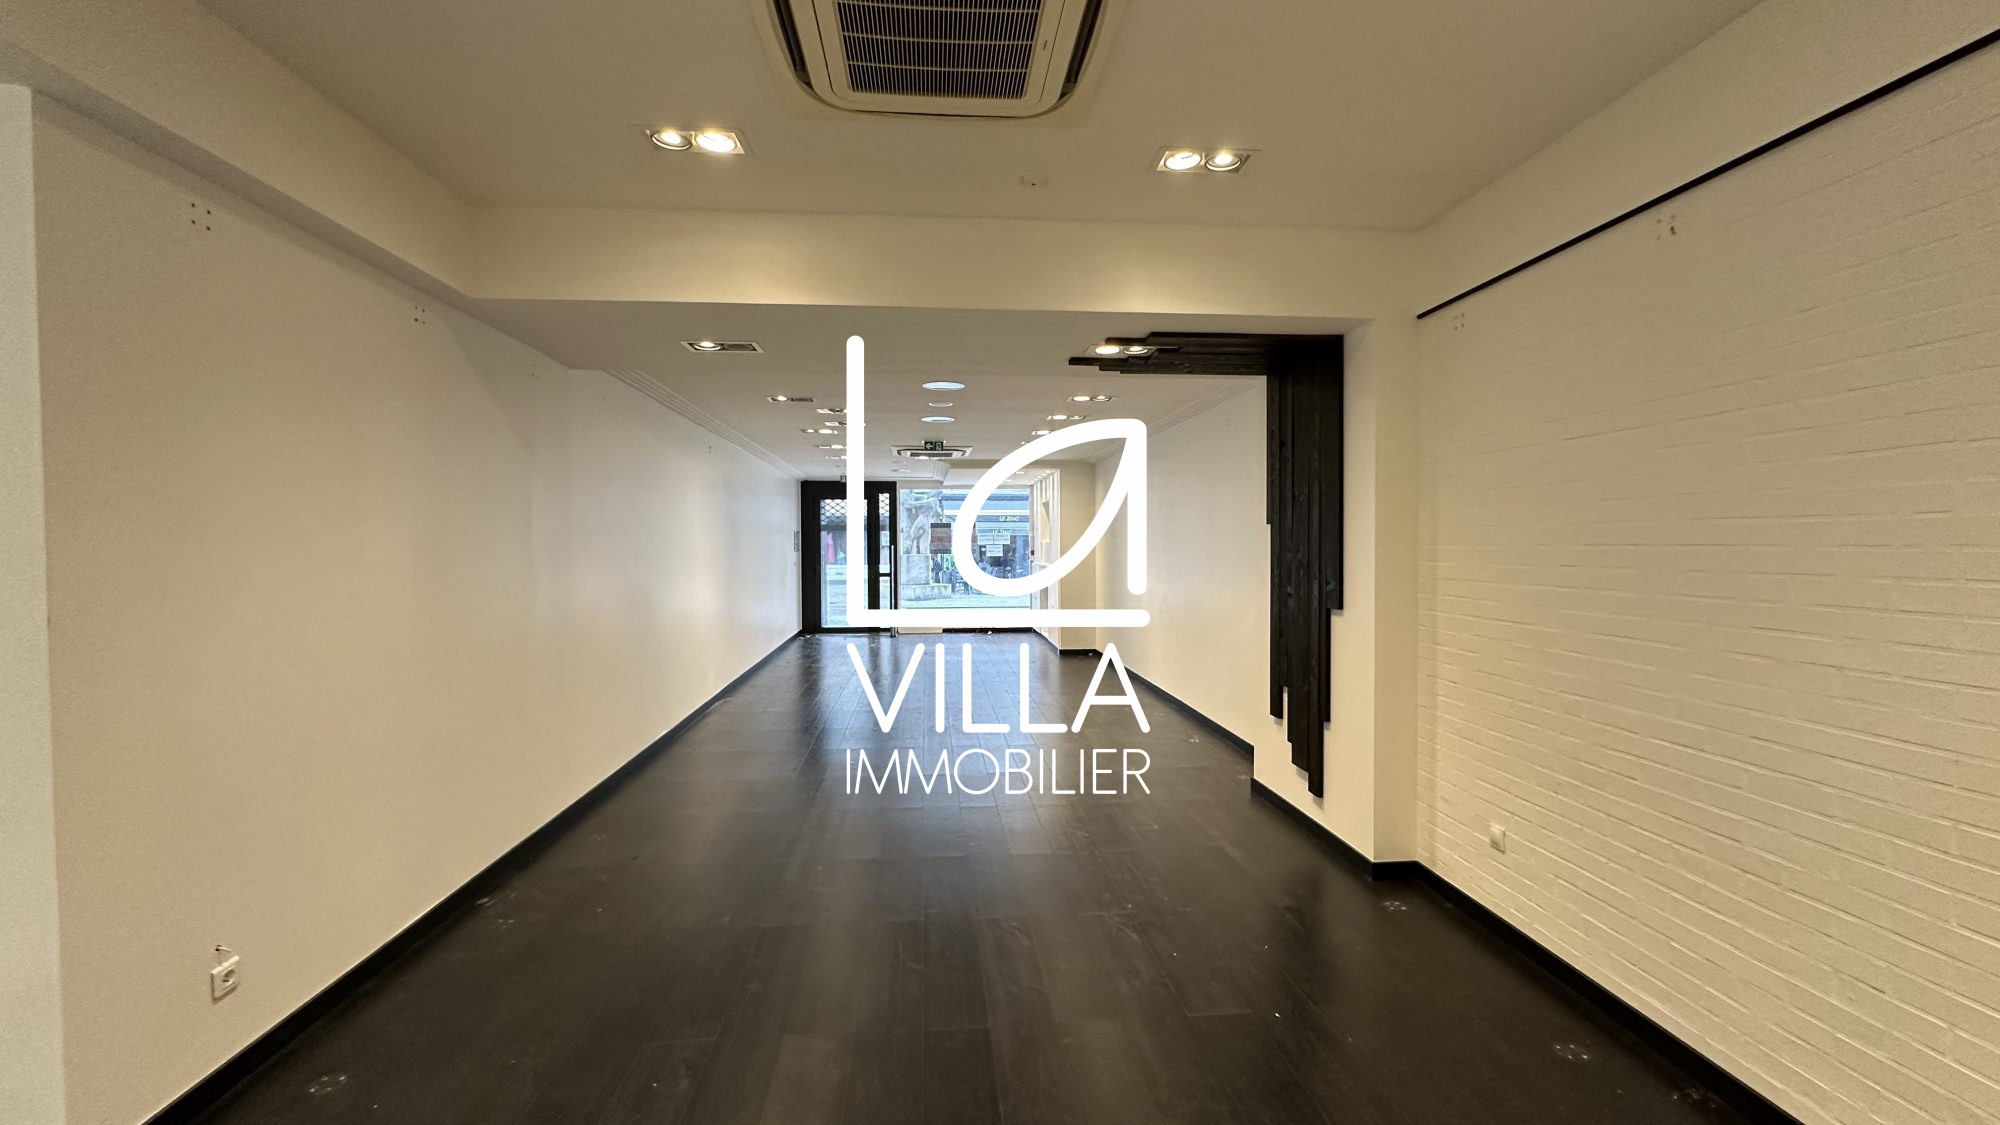 Agence immobilière de La Villa Immobilier